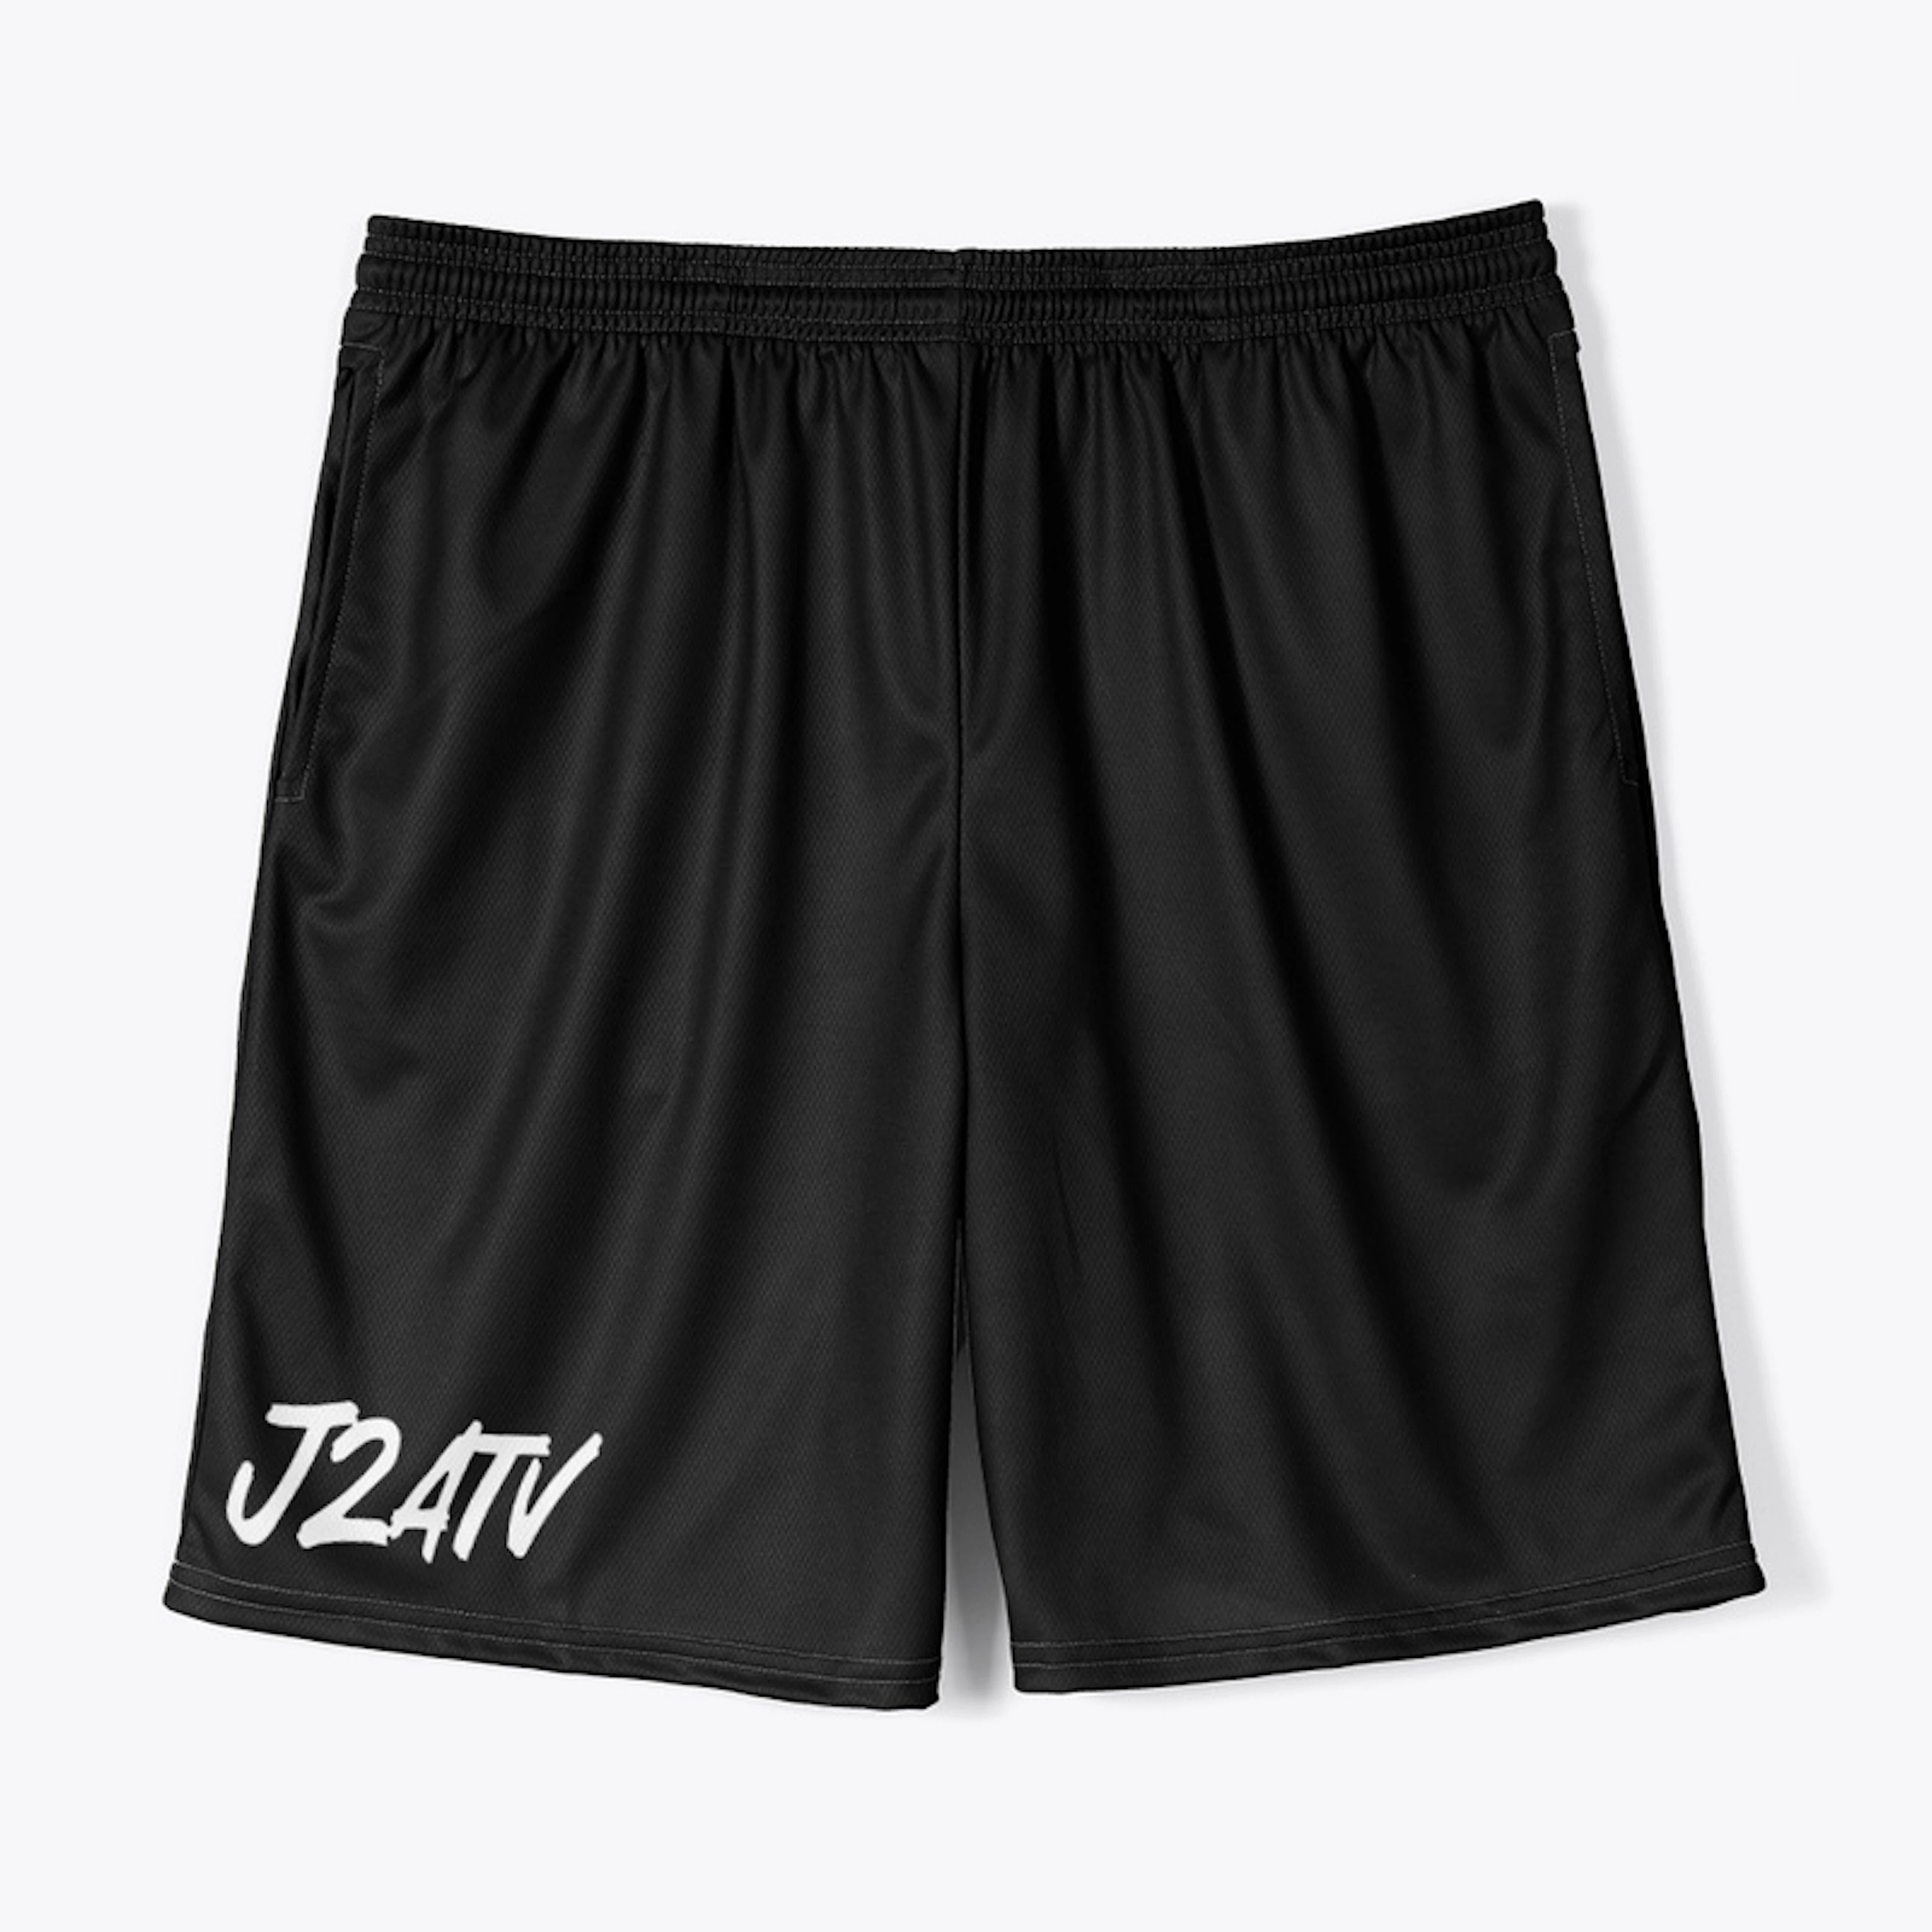 J2A TV Men's Shorts (5 colors)